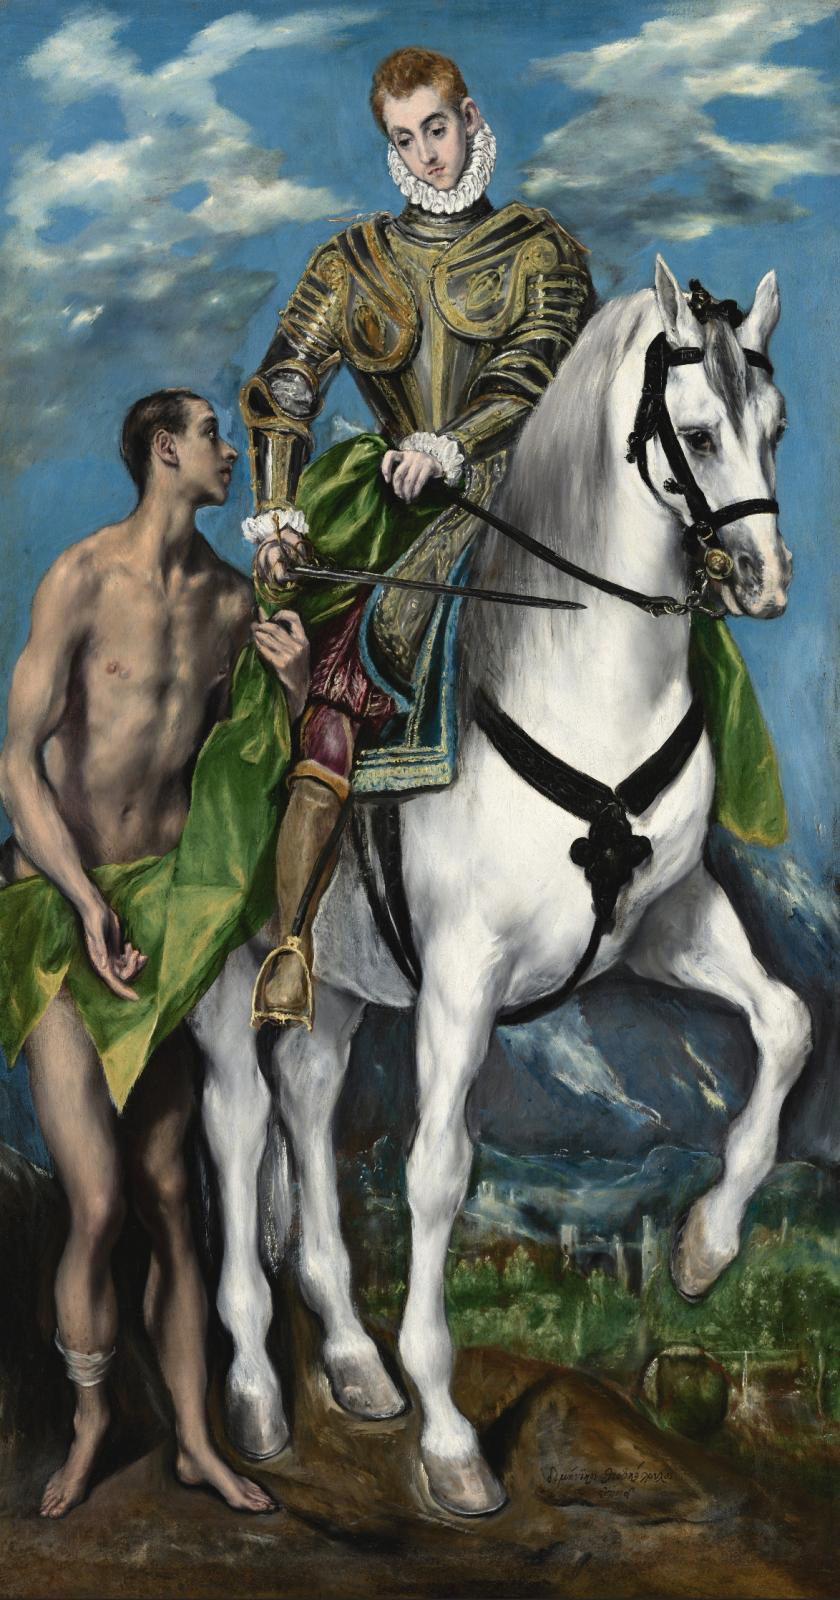 A Major El Greco Exhibition in Milan